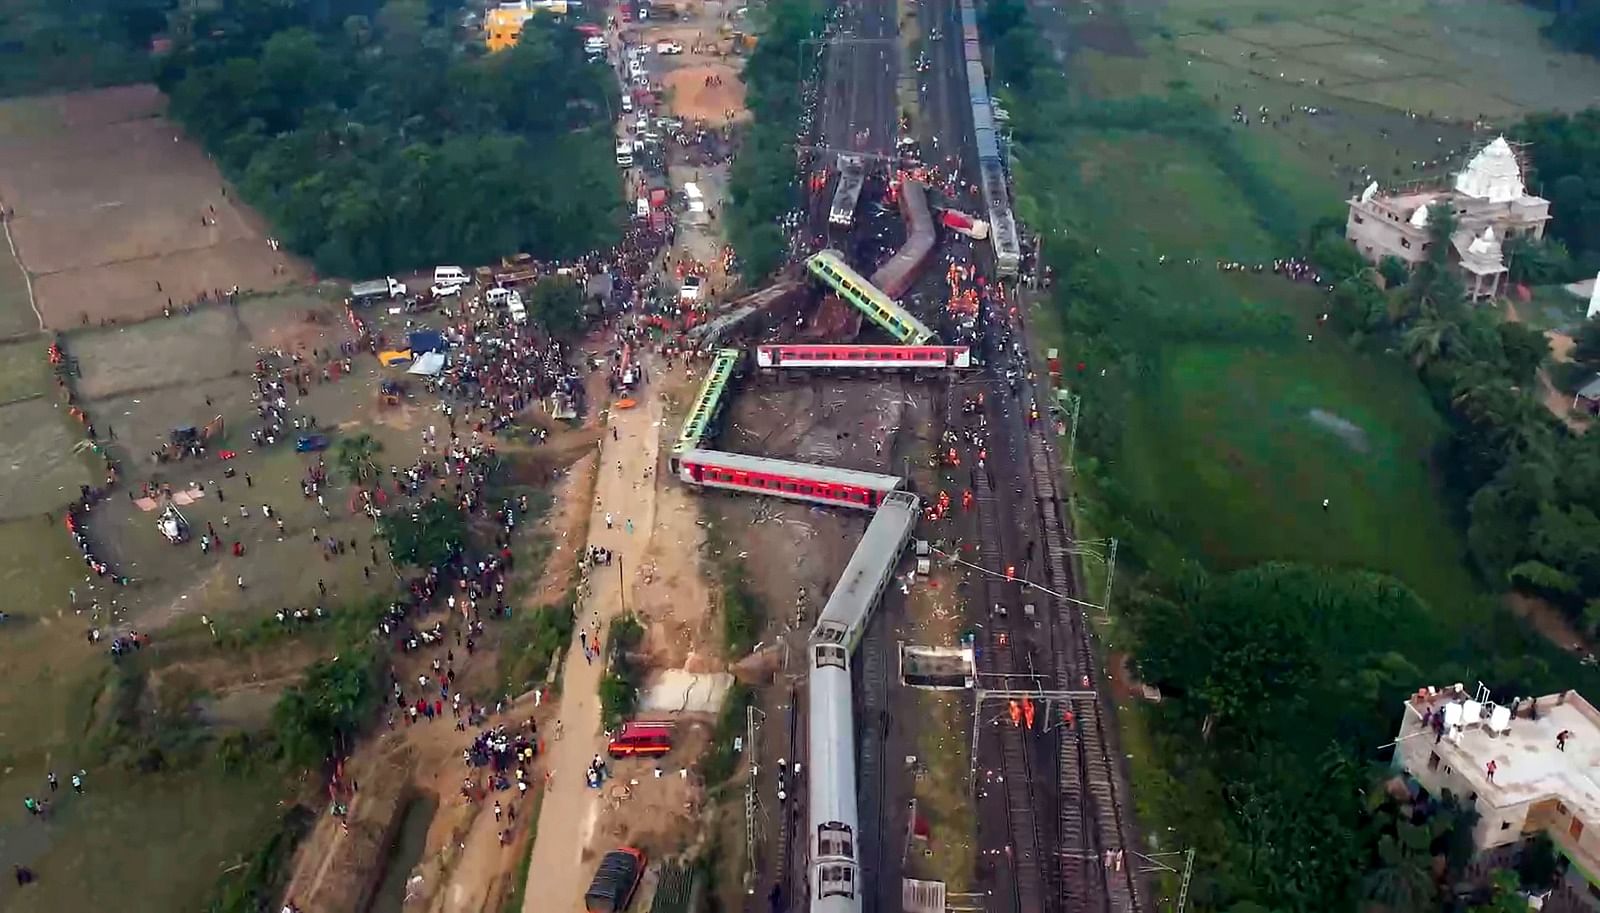 <div class="paragraphs"><p>बालासोर: बालासोर जिले में ट्रिपल ट्रेन दुर्घटना के बाद  घटनास्थल का हवाई दृश्य.</p></div>